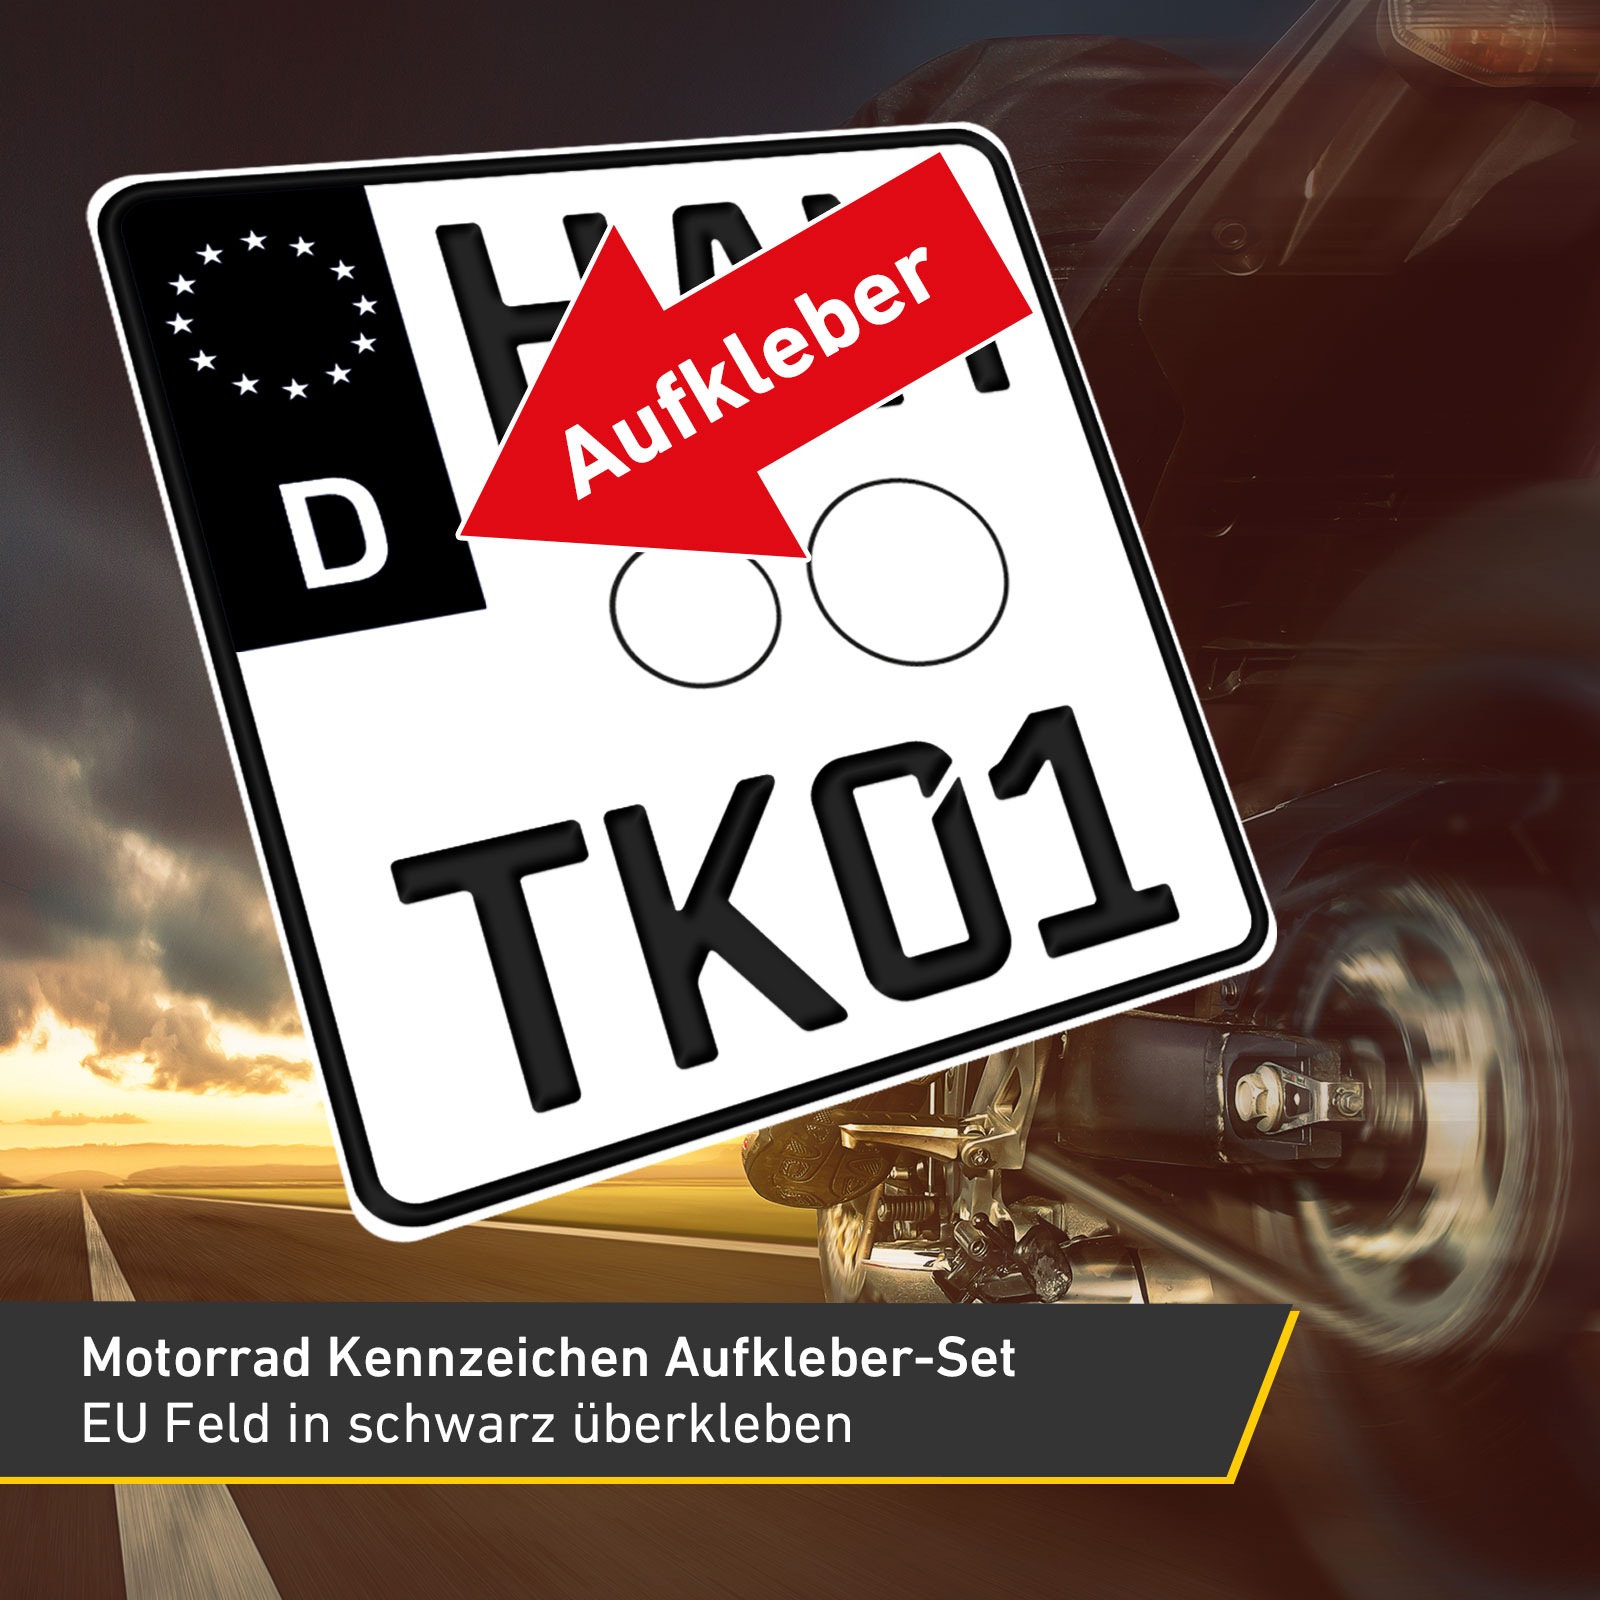 2x Motorrad Kennzeichen Nummernschild Aufkleber, EU Feld Schwarz, 1x Starter-Set